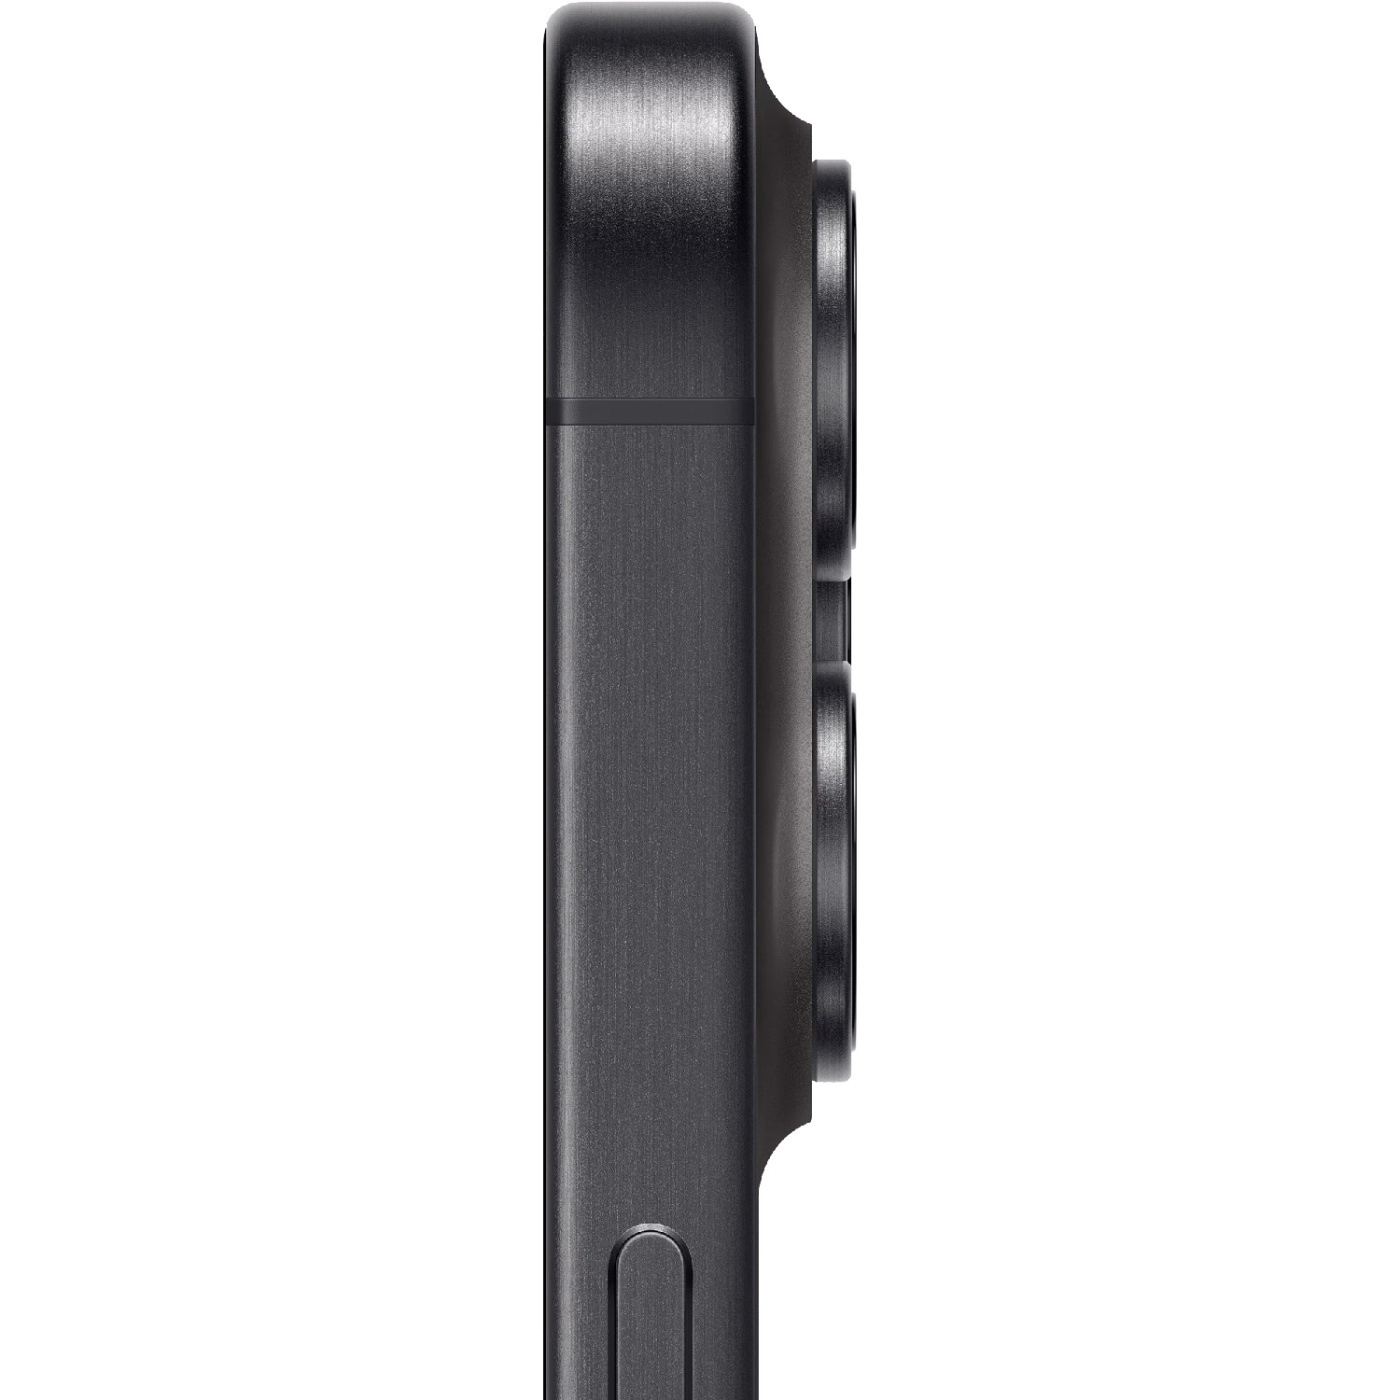 Apple iPhone 15 Pro Max 512Go Black Titanium - Cartronics